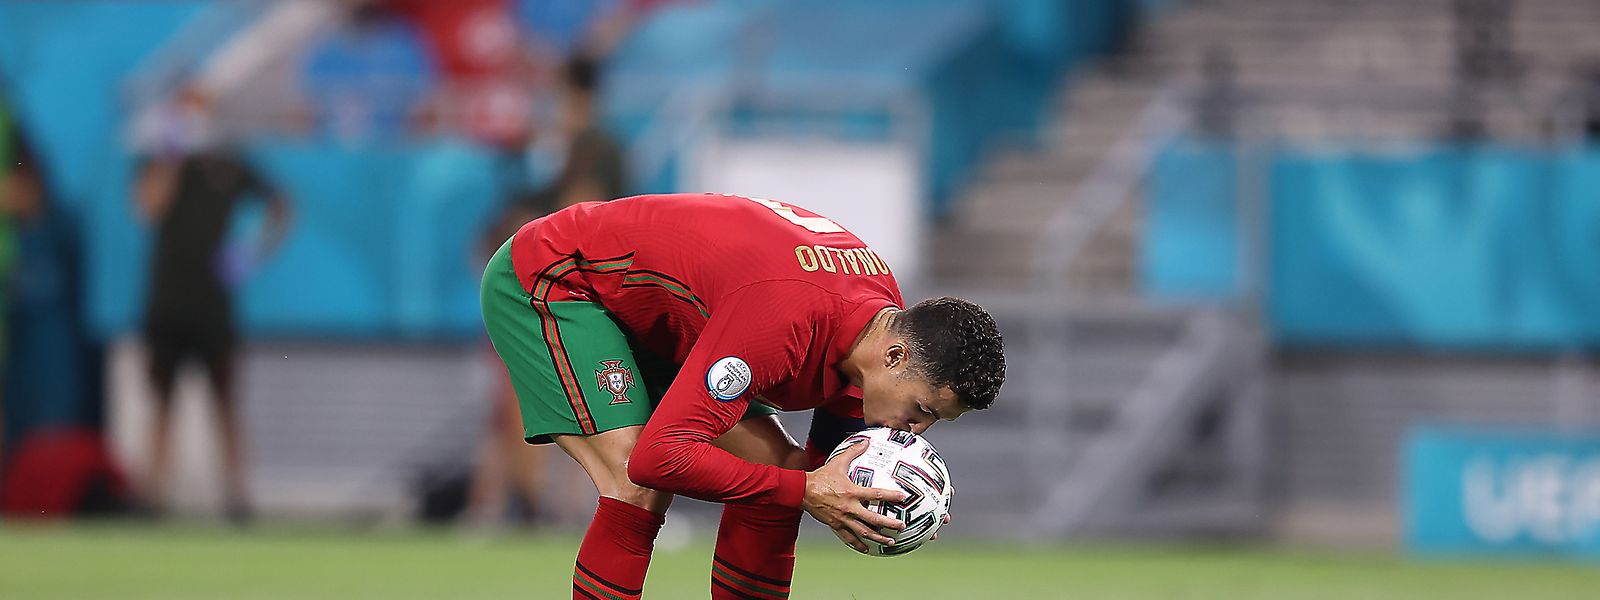 Ronaldo beija a bola antes de marcar um penálti no jogo contra a França, na fase de grupos para o Euro 2020, na Hungria.